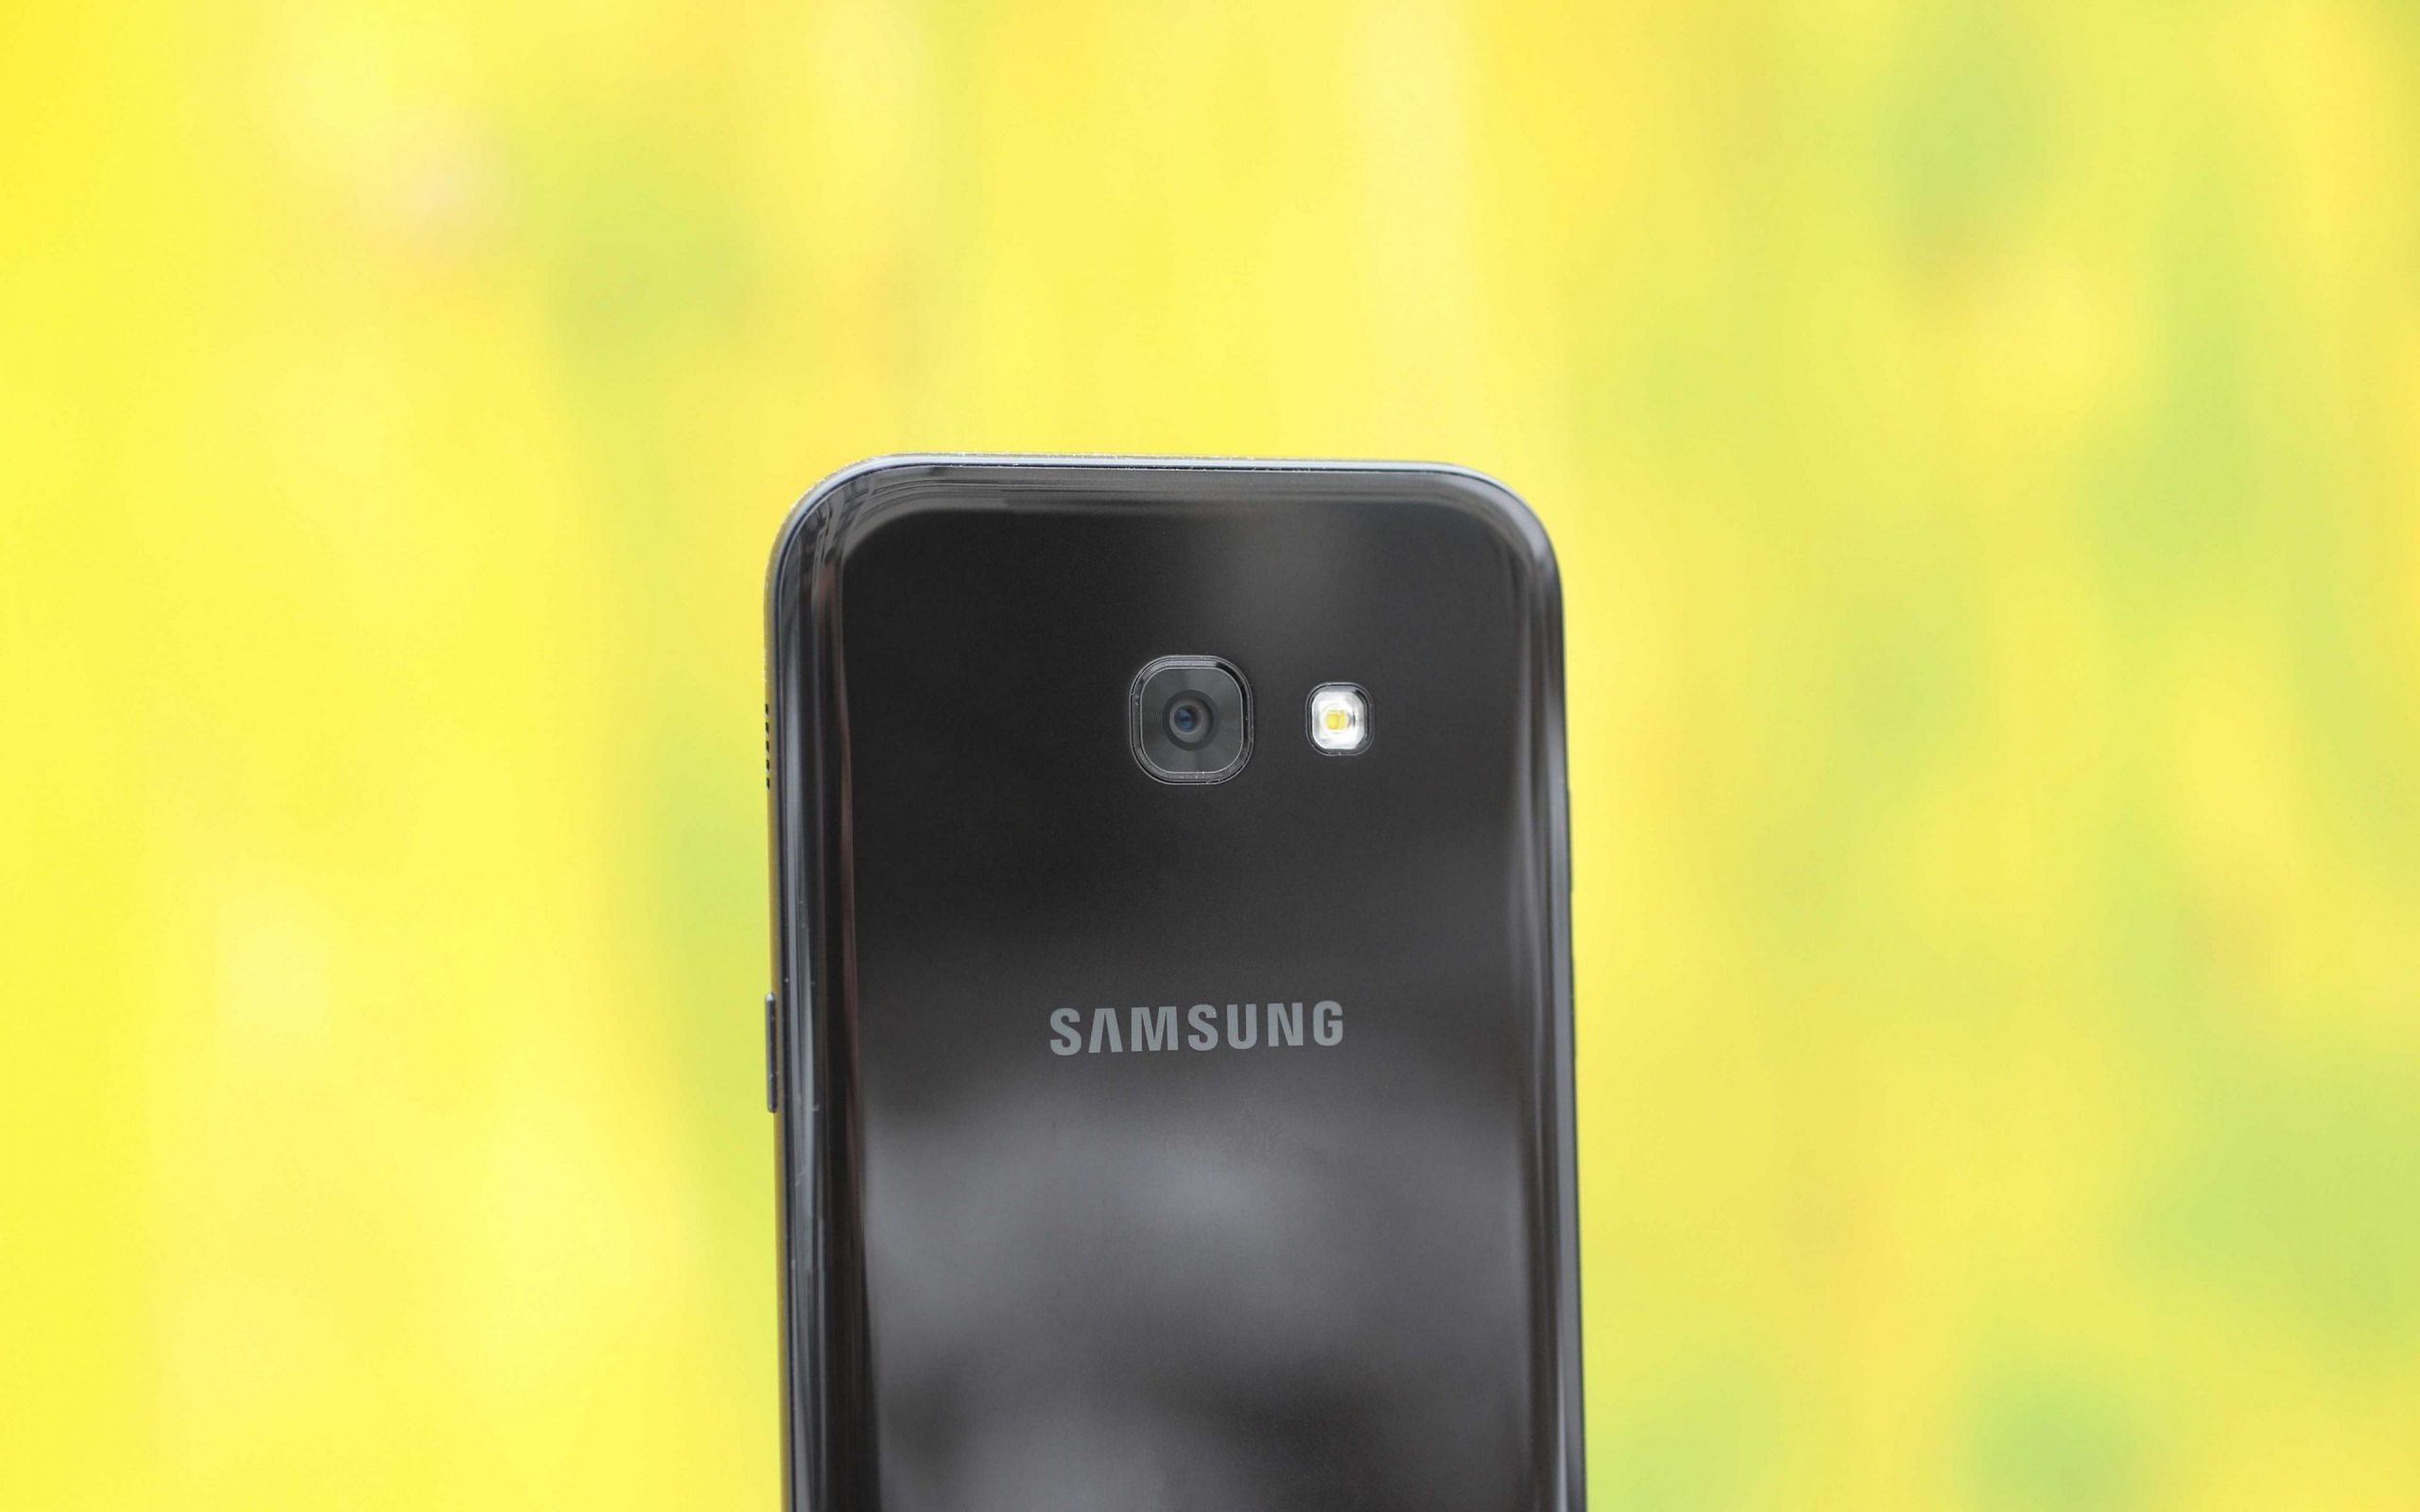 Xuất hiện thông tin cấu hình Samsung Galaxy A5 trên Geekbench